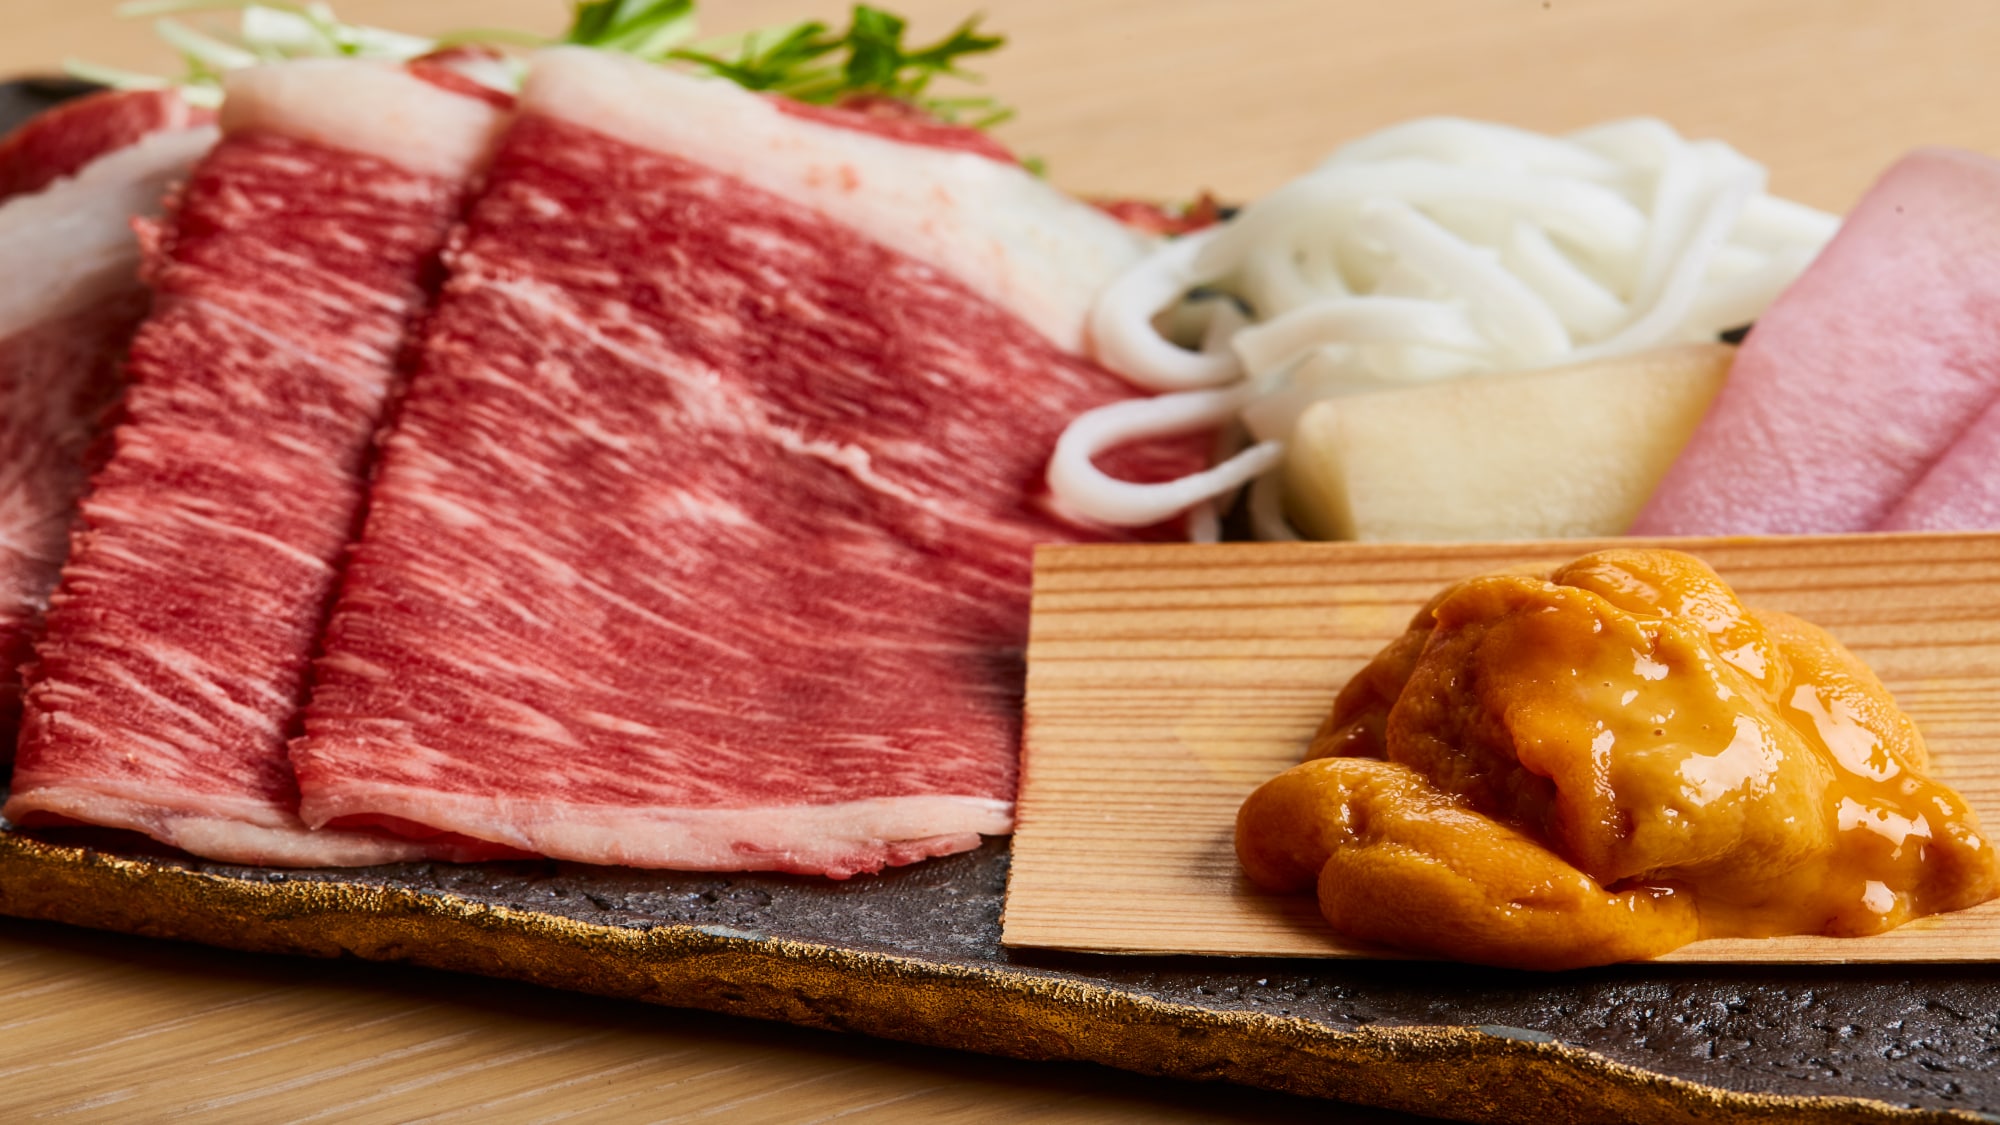 Yamato beef and sea urchin soup shabu-shabu